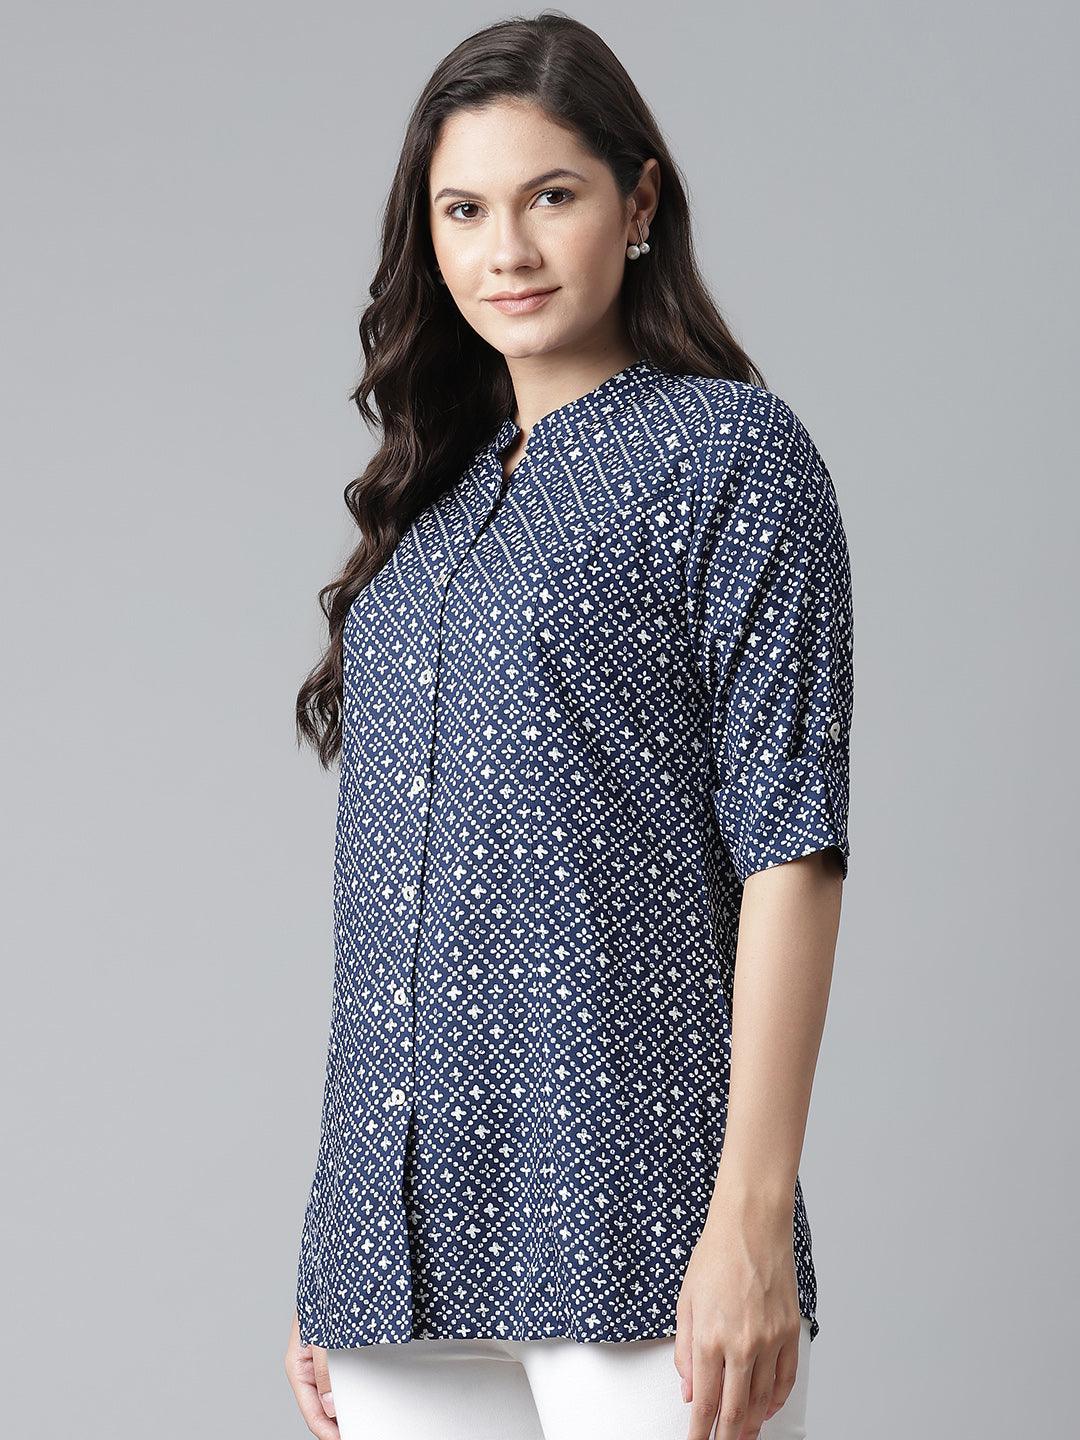 Divena Blue Rayon Printed Shirt Style Top - divena world